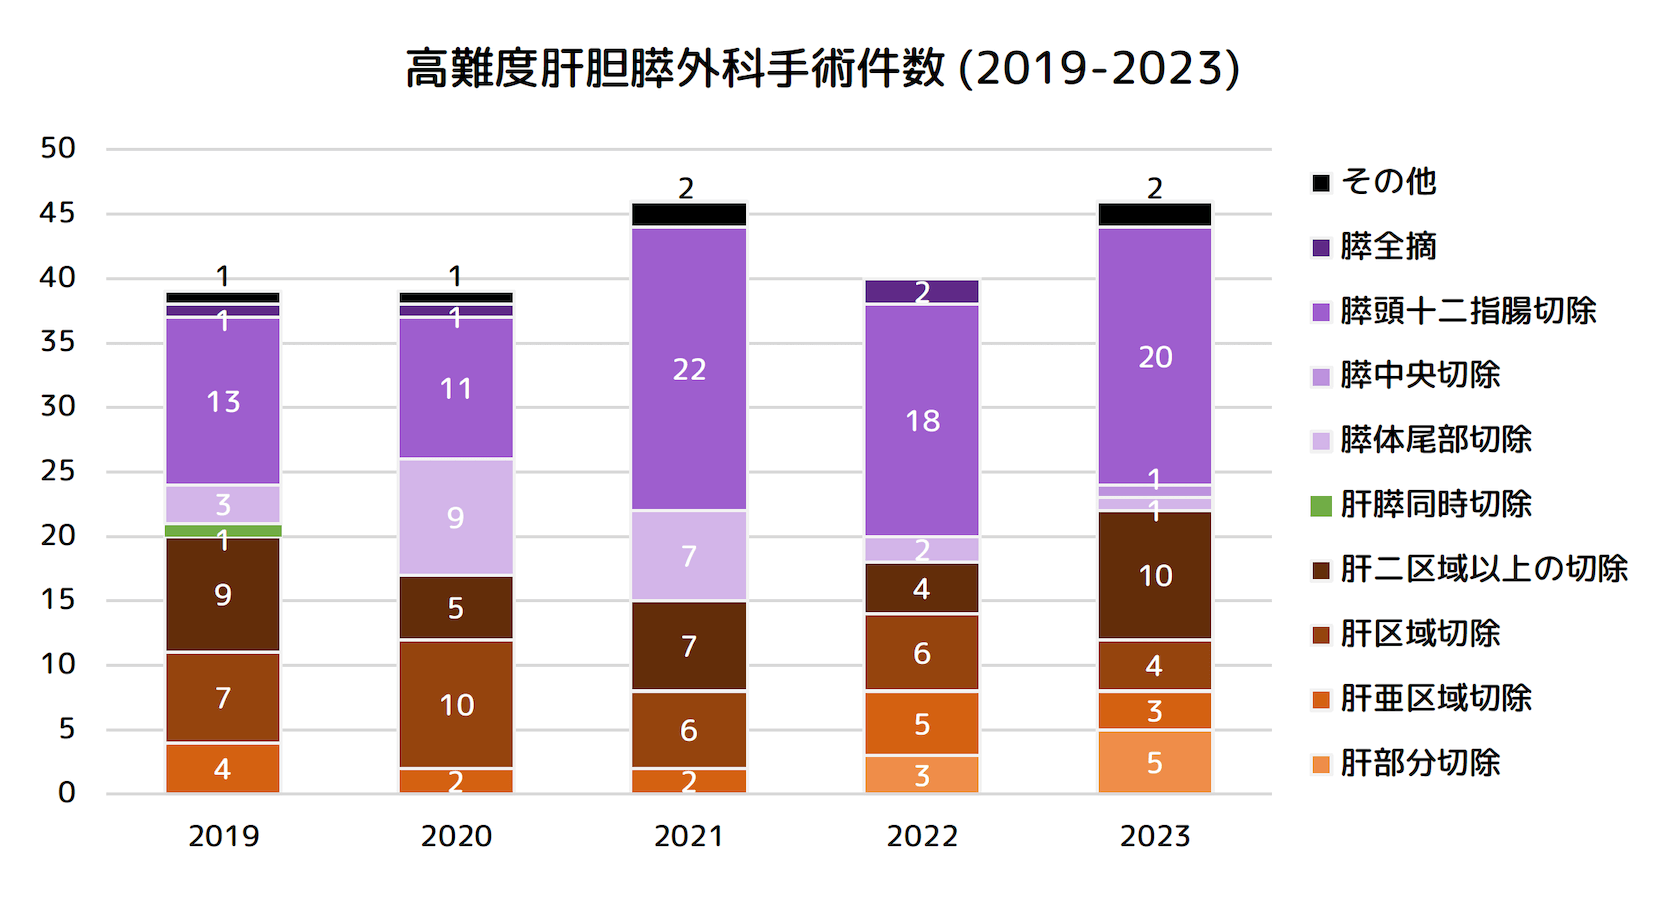 高難度肝胆膵外科手術件数 (2019-2023)